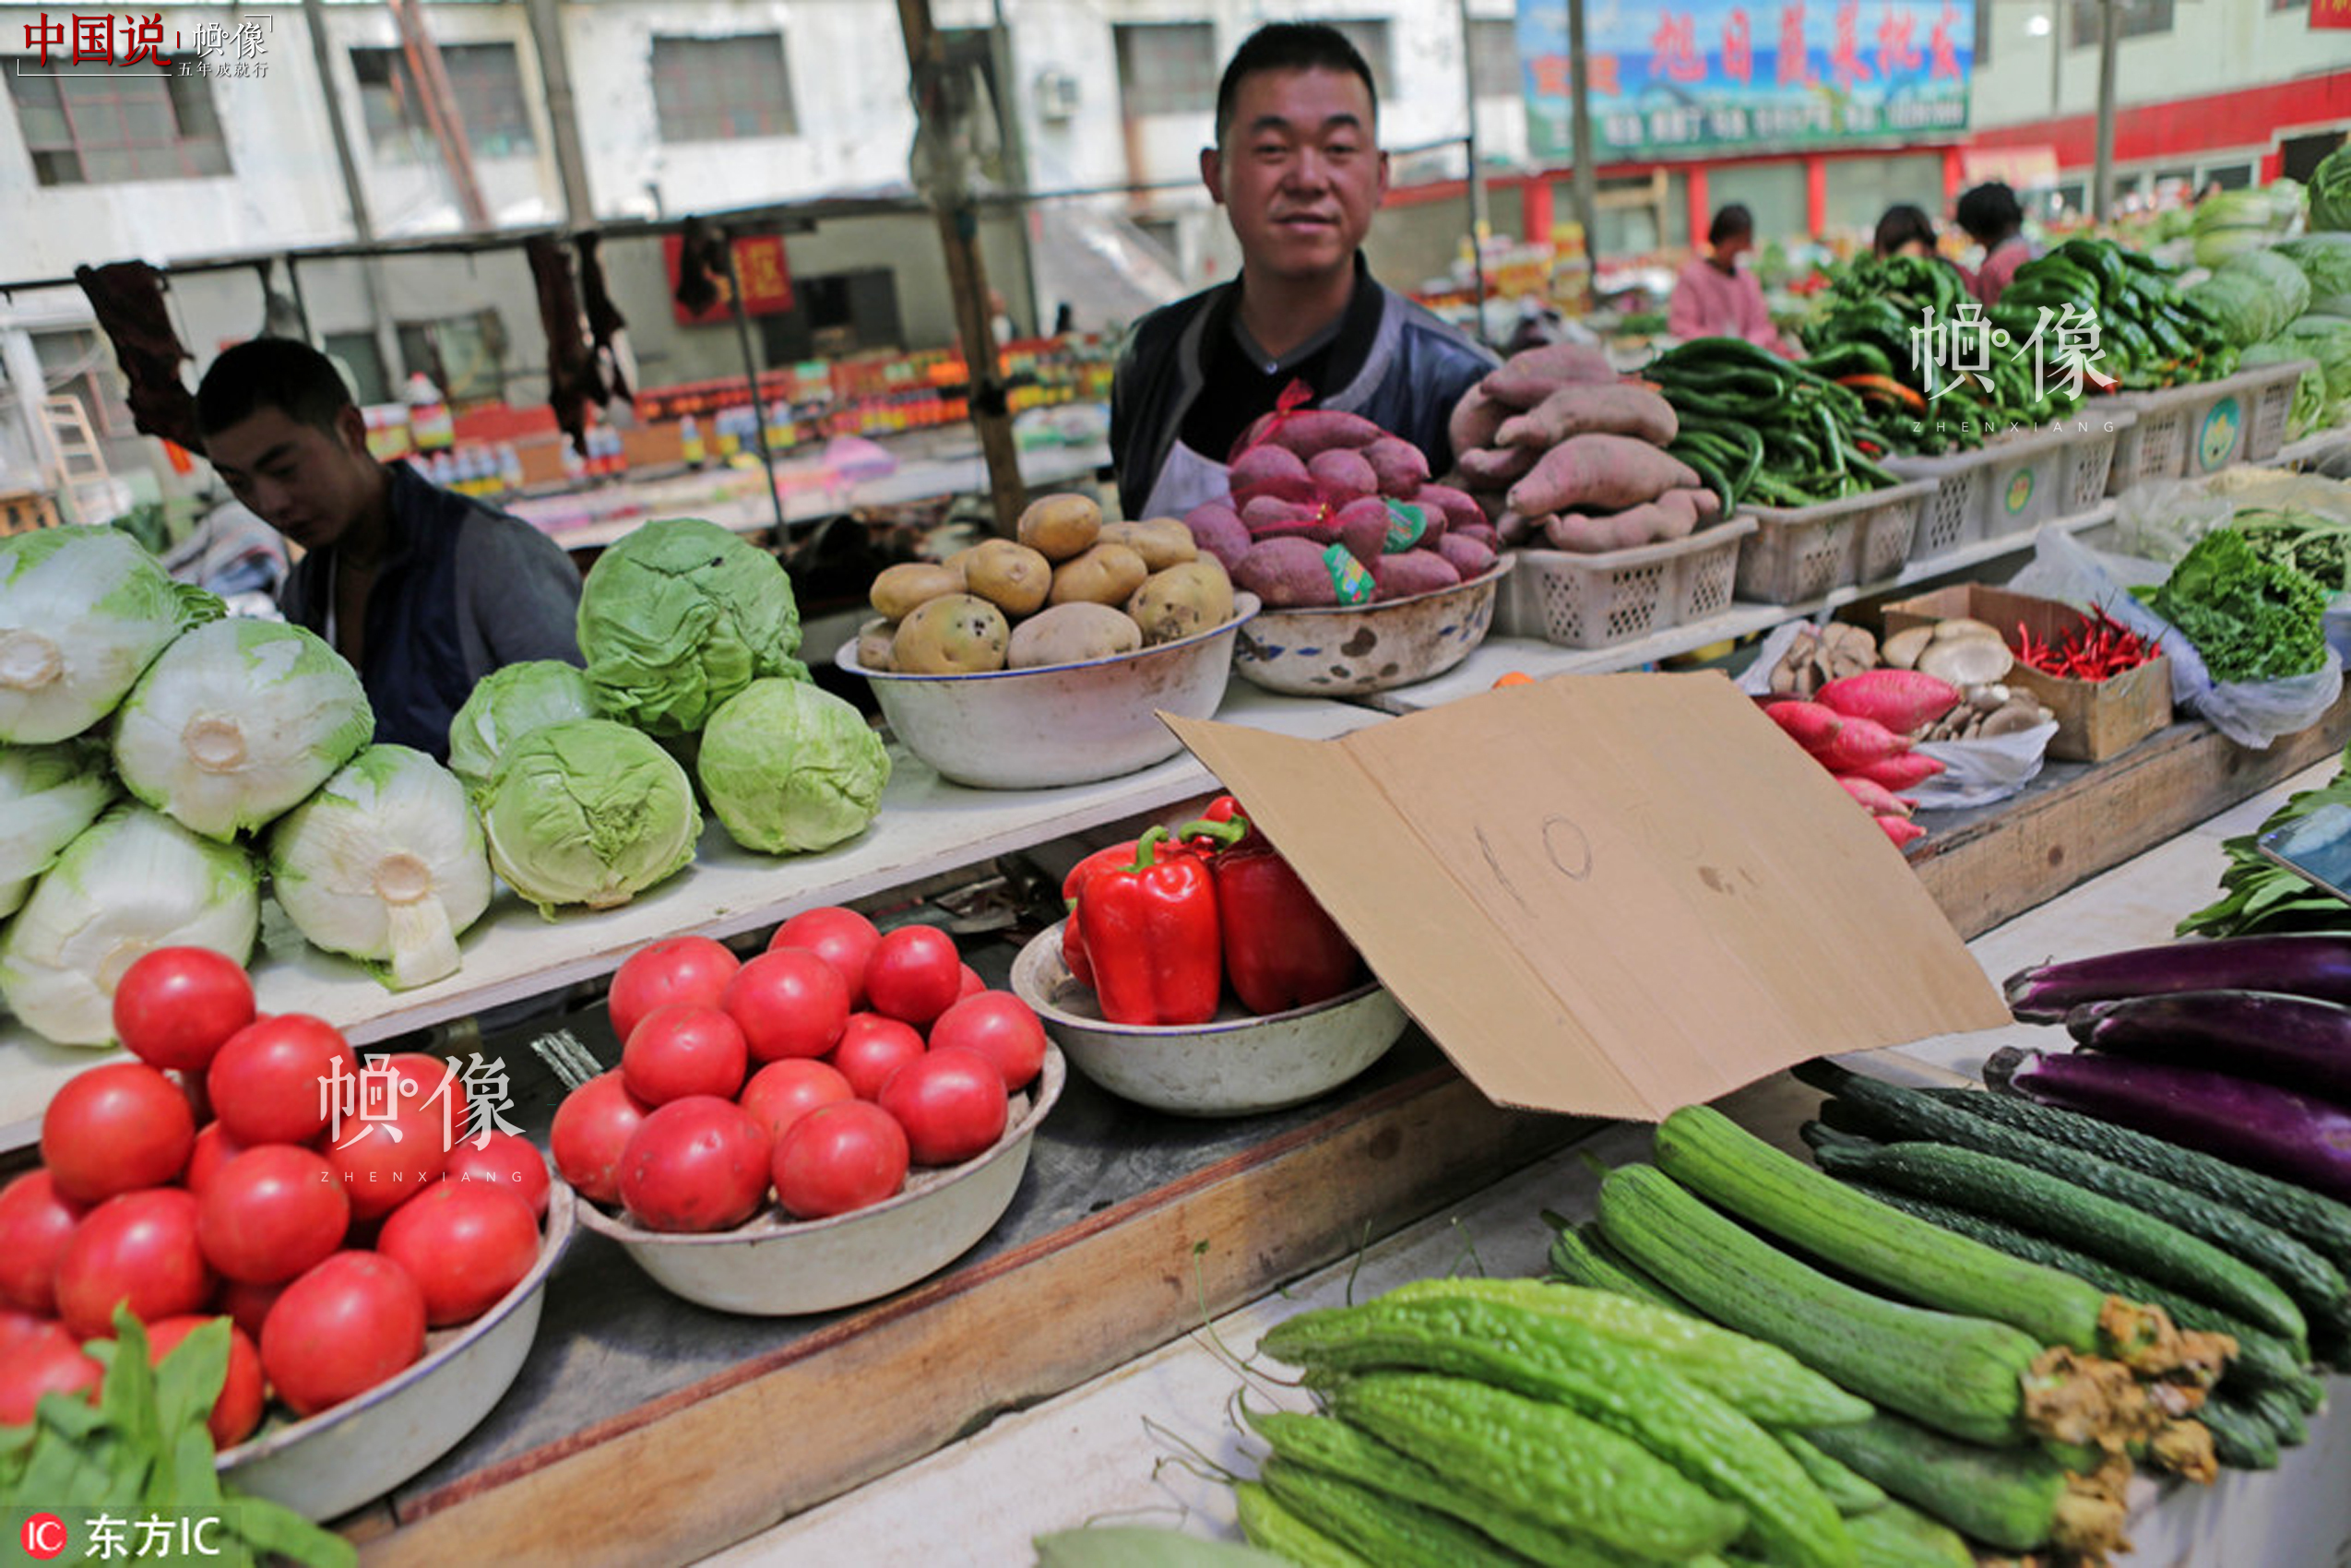 2014年8月17日，图为海拔4255米西藏阿里地区噶尔县狮泉河镇最大的农贸市场，当地驻扎武警交通部队后勤战士在高原上采用无土栽培技术，让绿色绽放在阿里高原。如今的蔬菜大棚成了新藏线上有名的“开心农场”。文武 东方IC